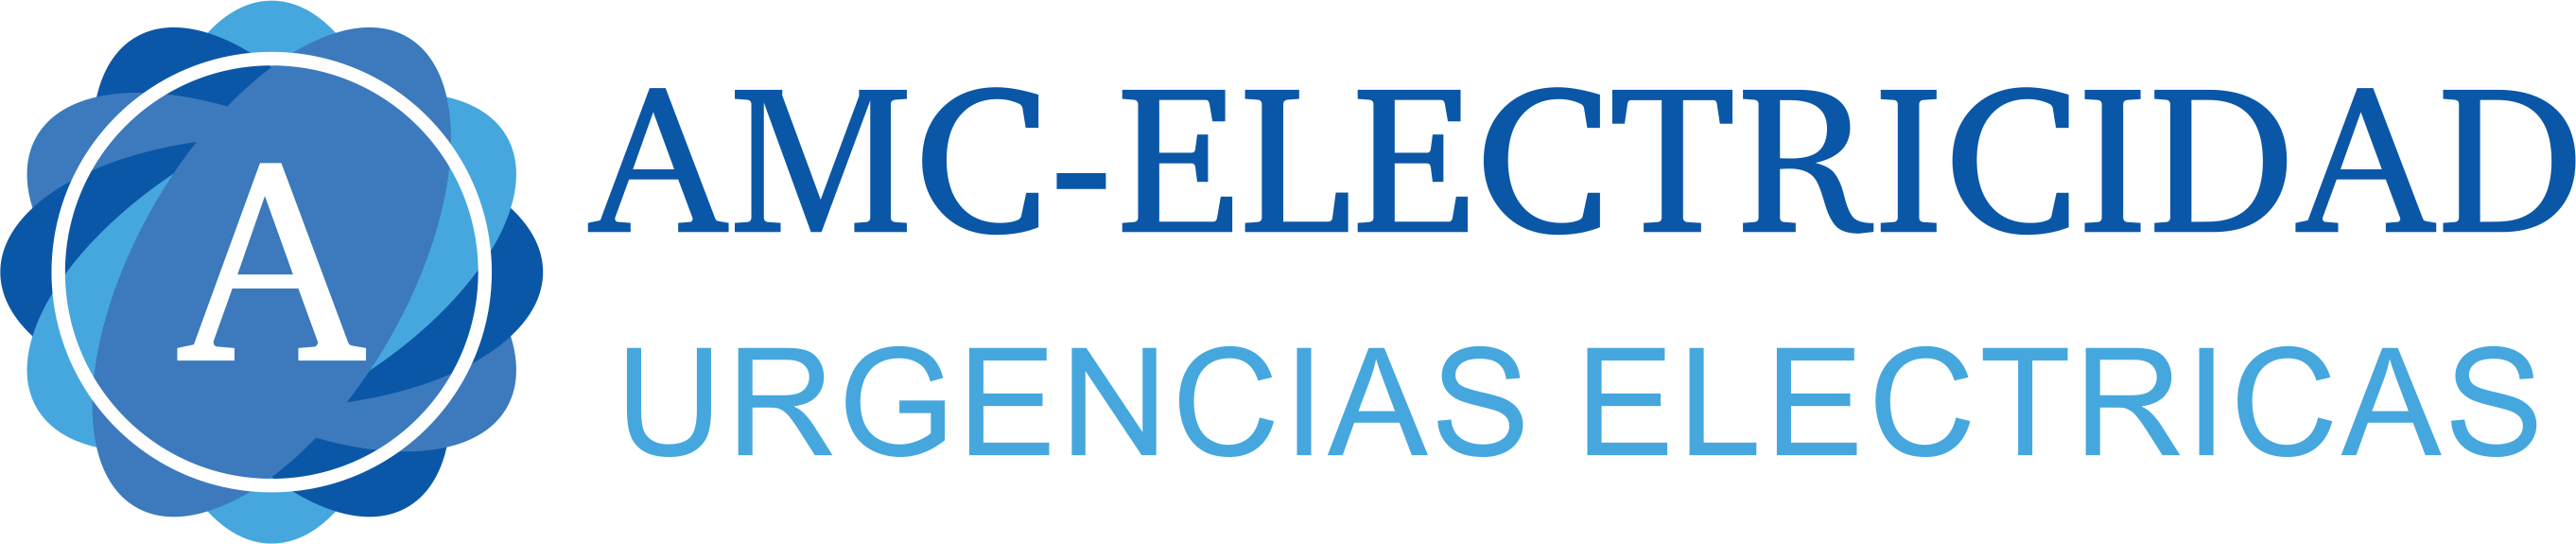 ▷ Electricistas Urgentes en Sevilla - Aljarafe | 24 horas【611 71 43 19】